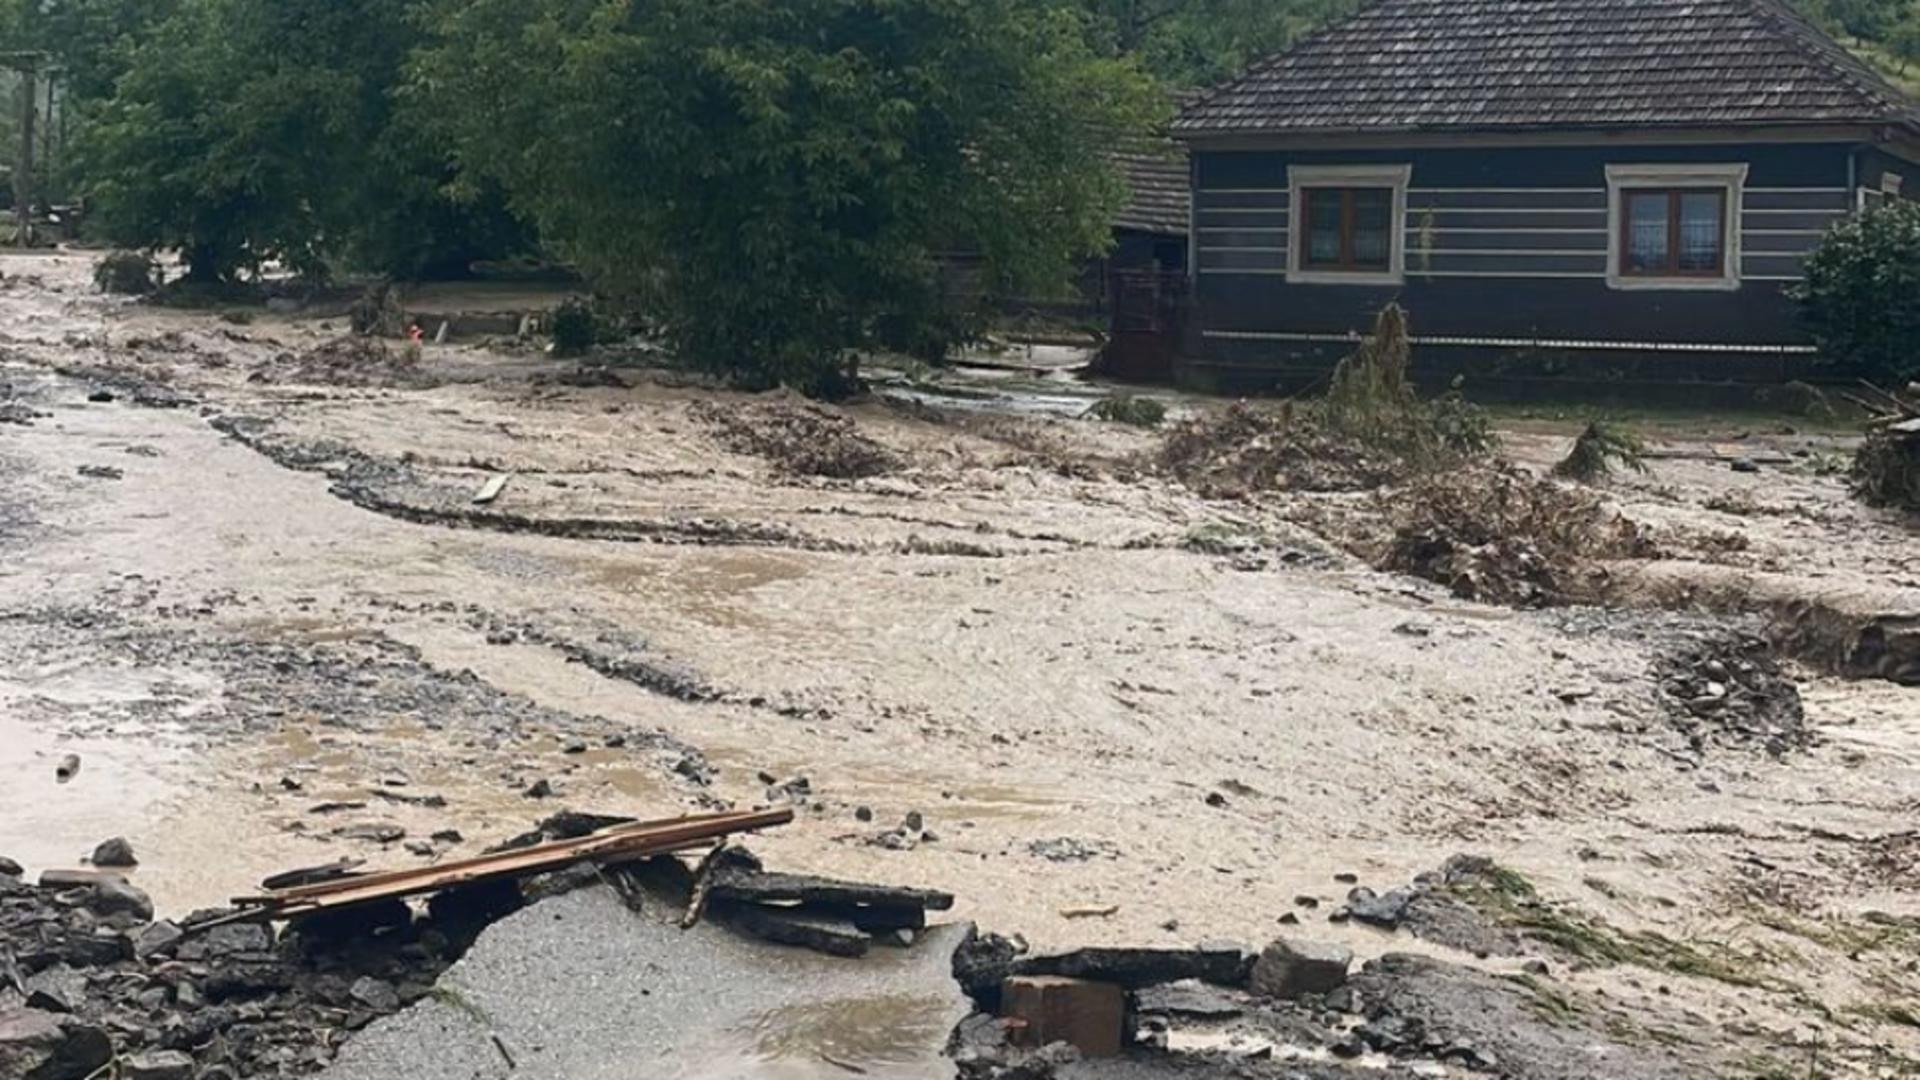 Pericol de inundații în următoarele zile: Coduri portocaliu și galben pe râuri din 3 județe - Prognoza INHGA și HARTA zonelor afectate